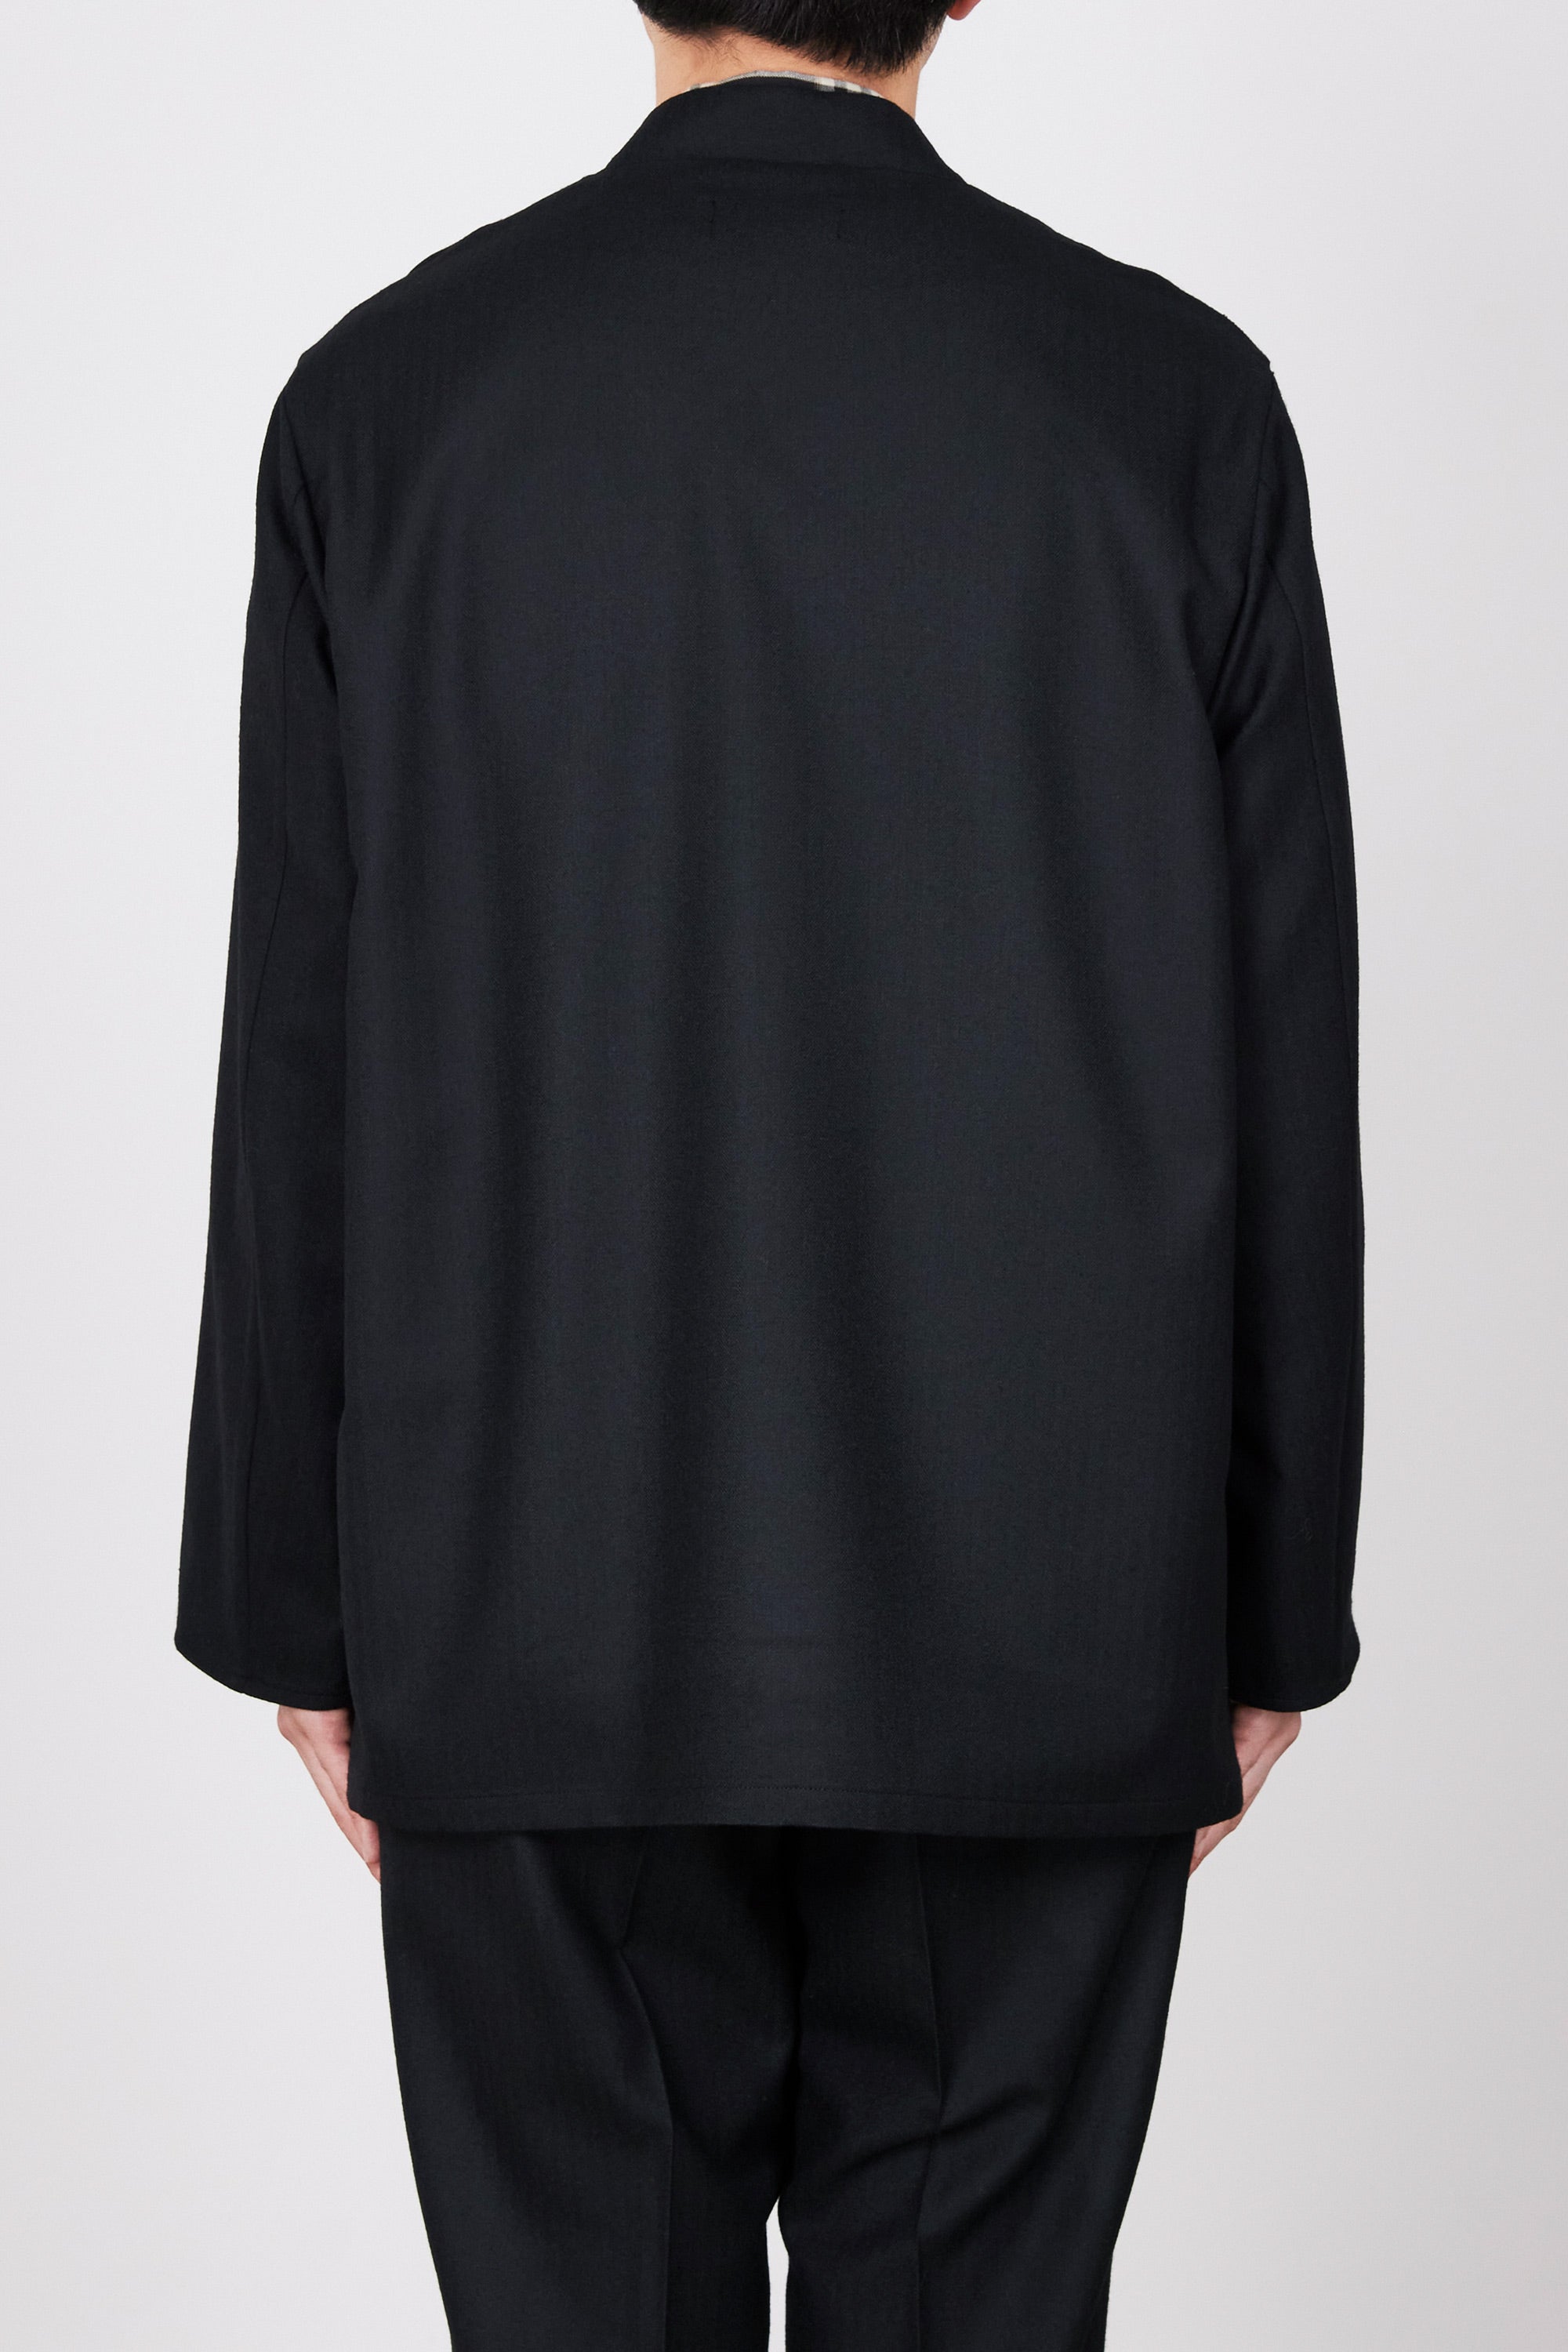 ウールへリンボン/ ラペルレスシャツジャケット, Black – MARKAWARE